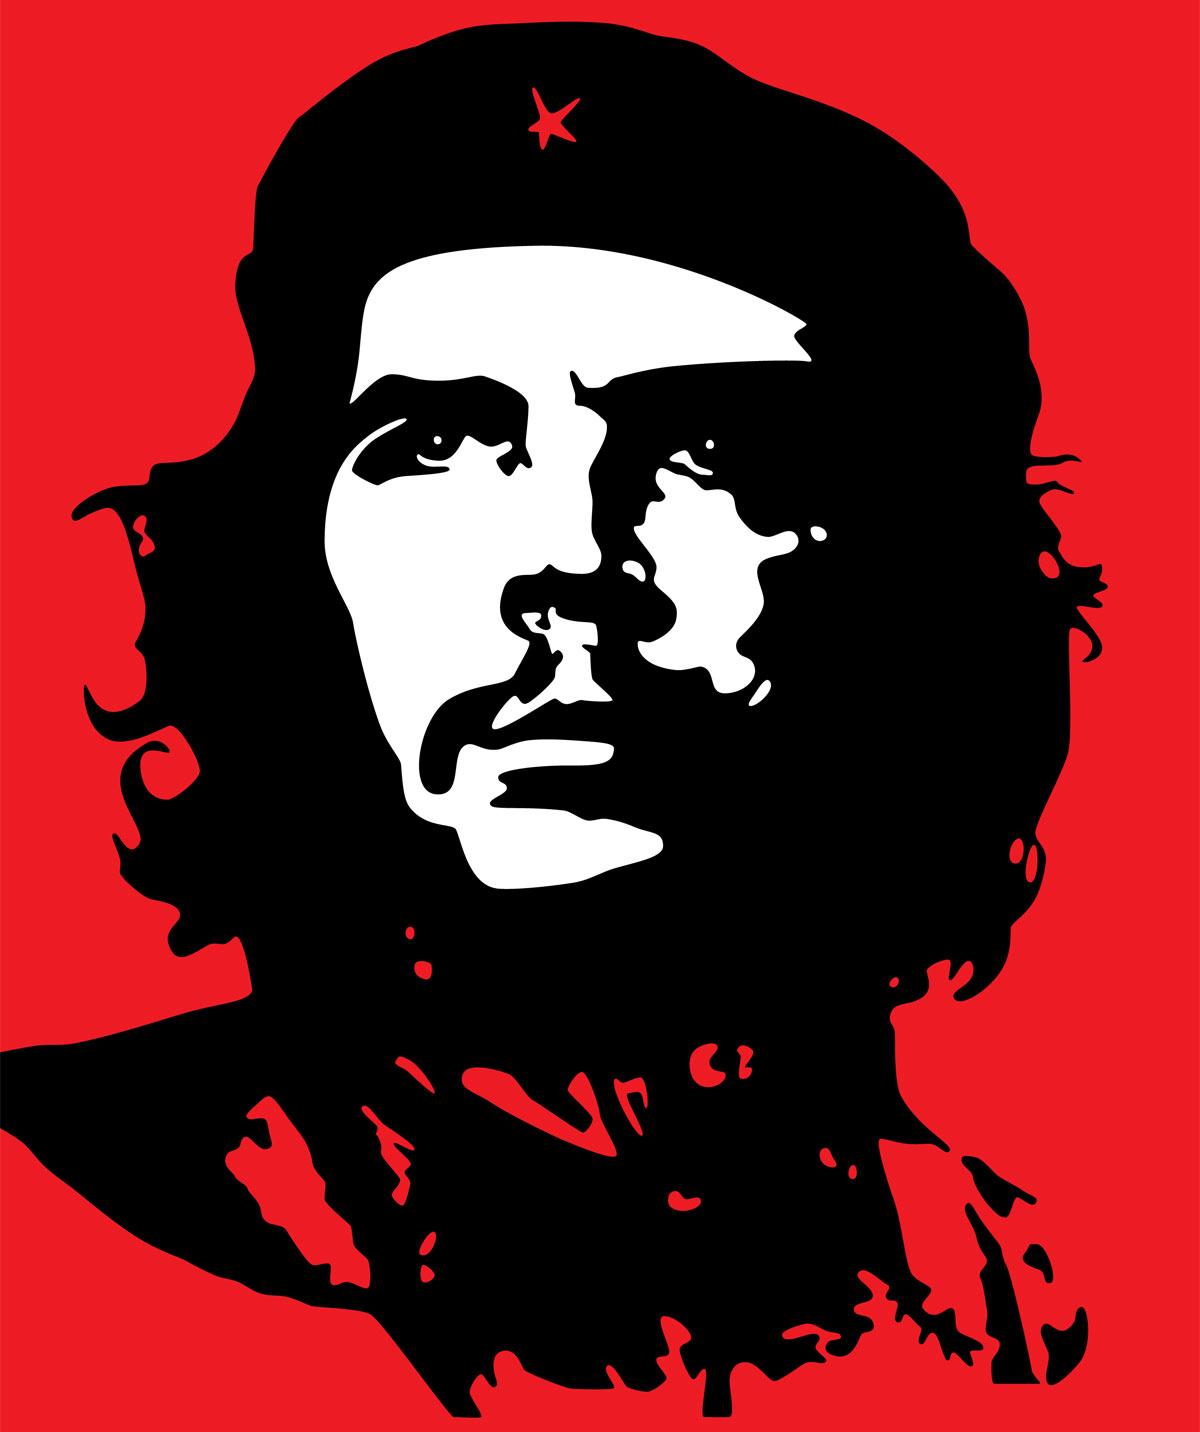 Проданная революция: история знаменитой фотографии Че Гевары | Вокруг Света